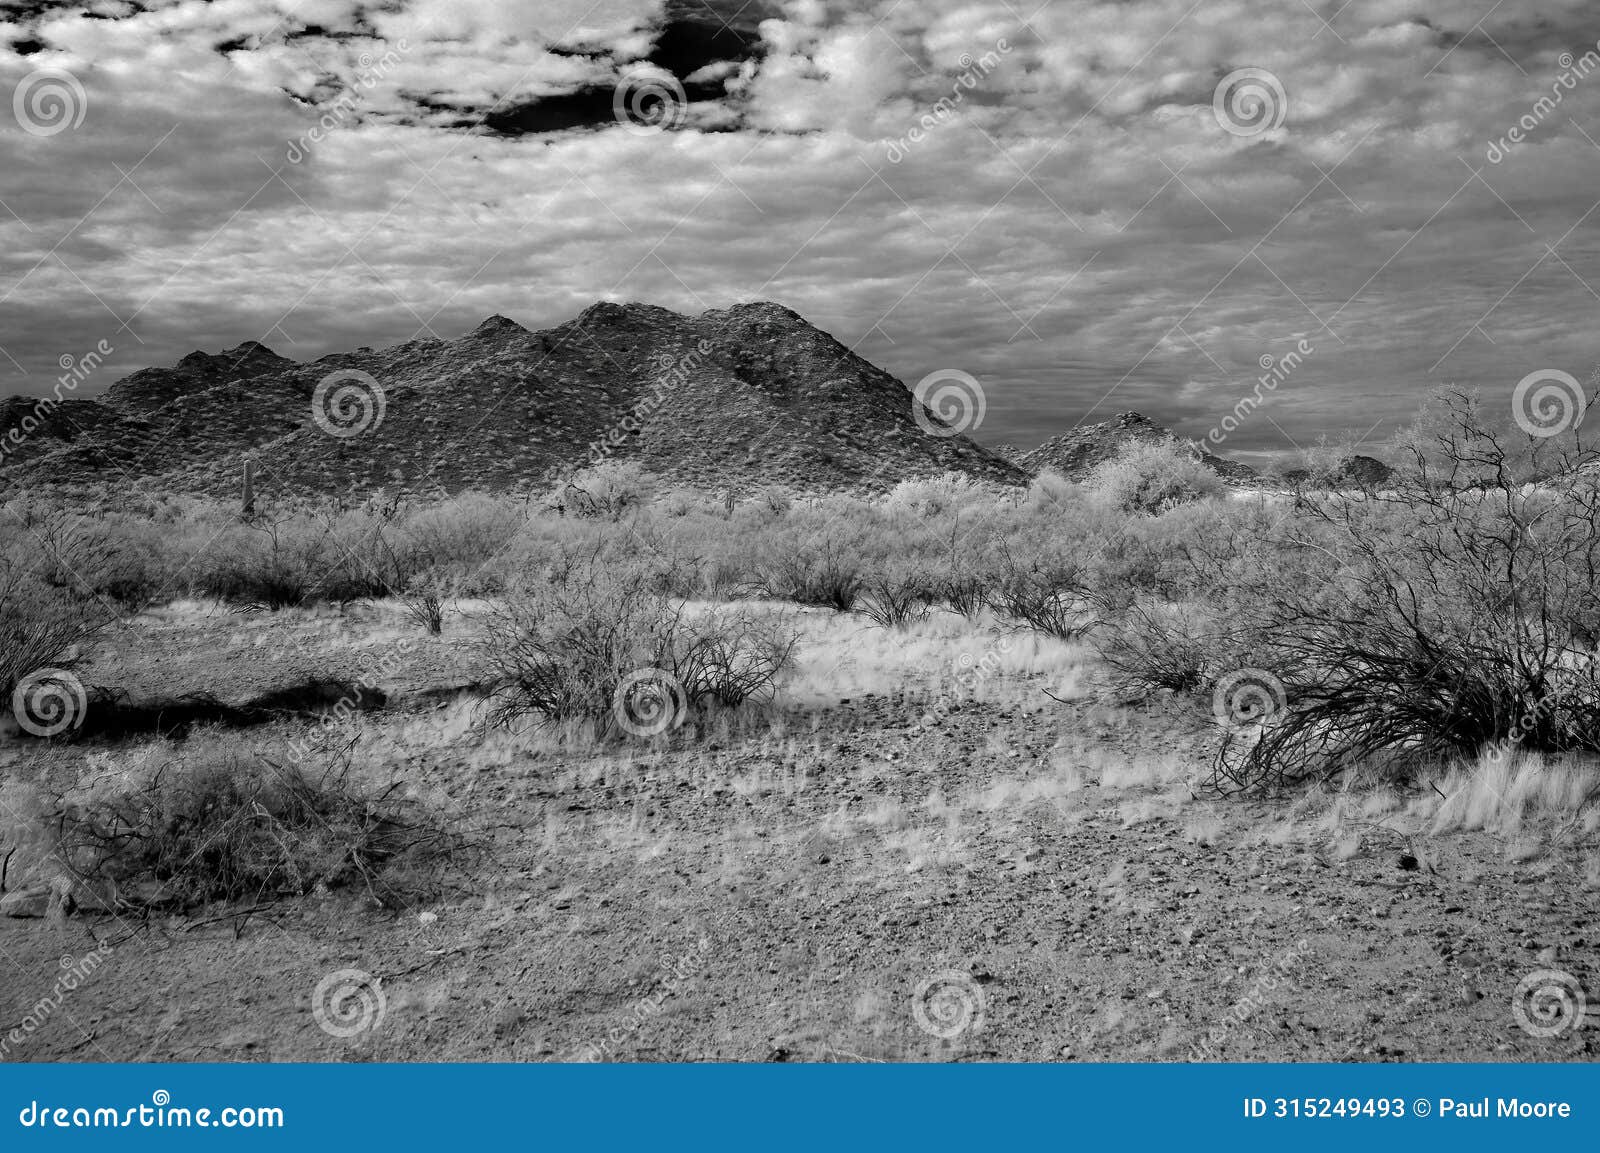 san tan mountains sonora desert arizona in monochrome